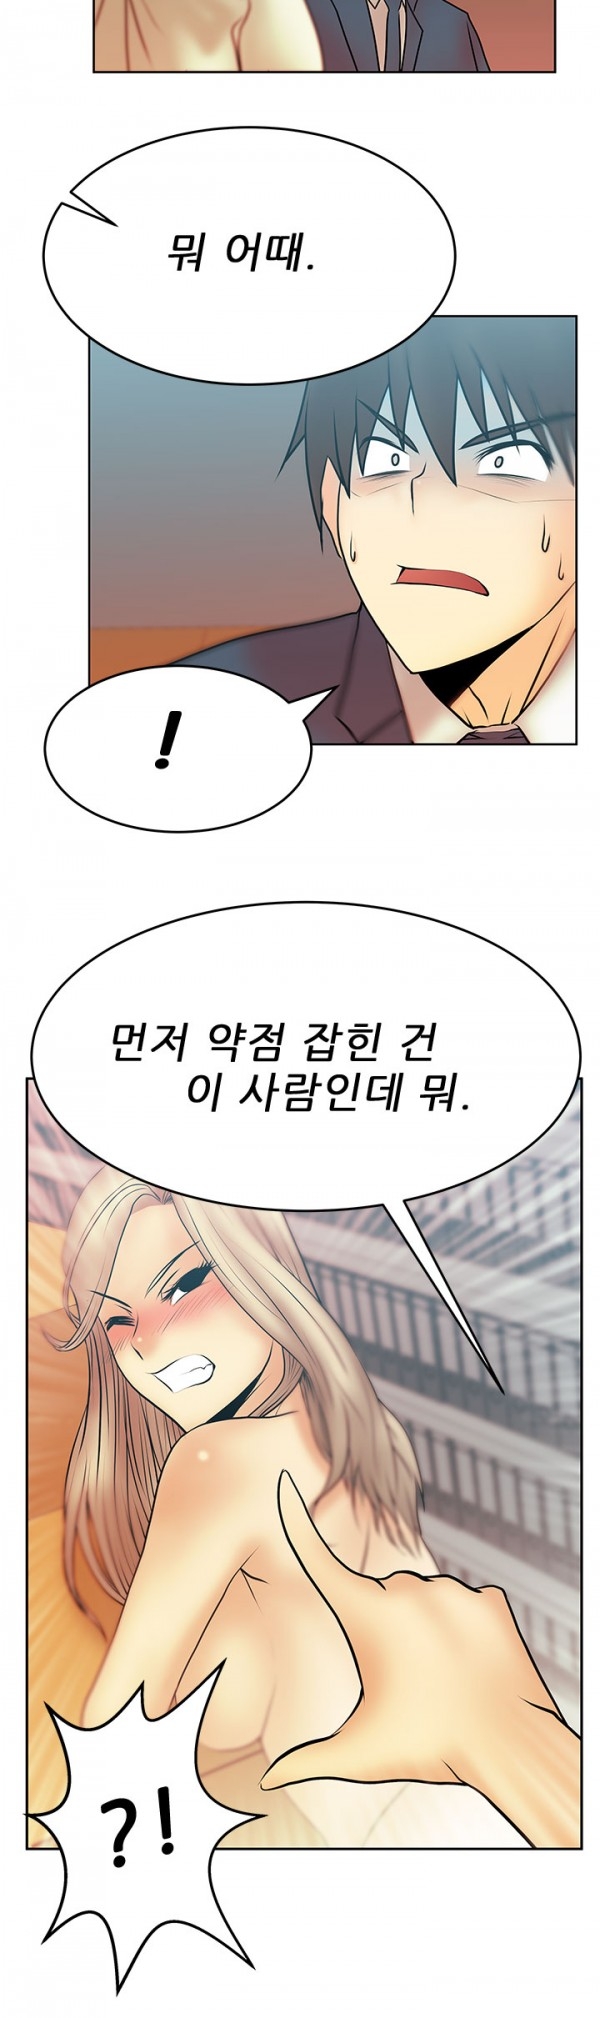 [Minu Mindu] Office Lady Vol. 1 [Korean] 172